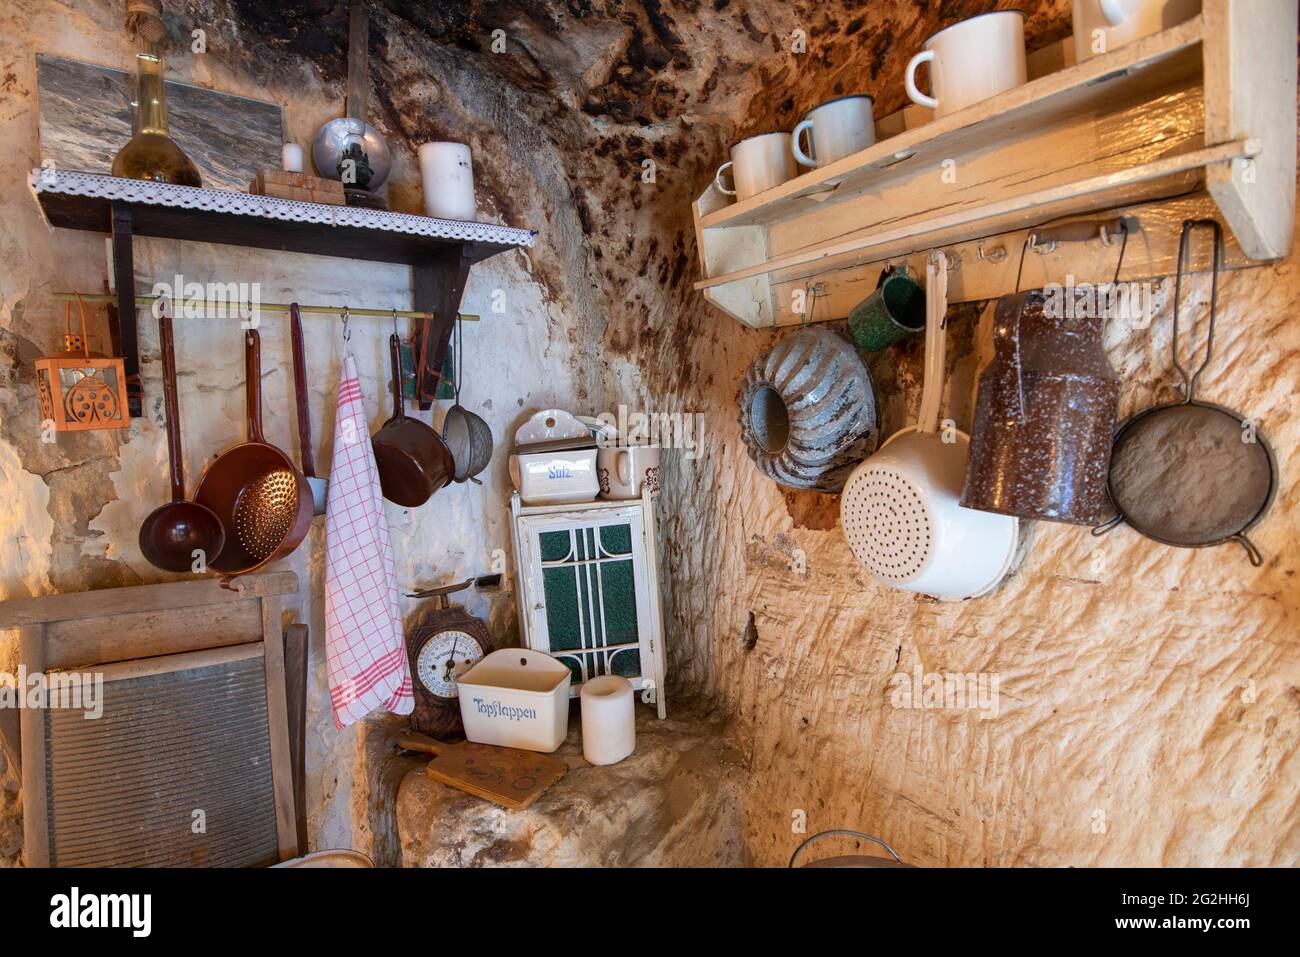 Alemania, Sajonia-Anhalt, Langenstein, cocina pequeña en una cueva que habita en Langenstein en las montañas de Harz. Las casas cueva en Langenstein fueron talladas en arenisca por trabajadores migrantes en el siglo 19th, y hoy son accesibles a los visitantes. Foto de stock